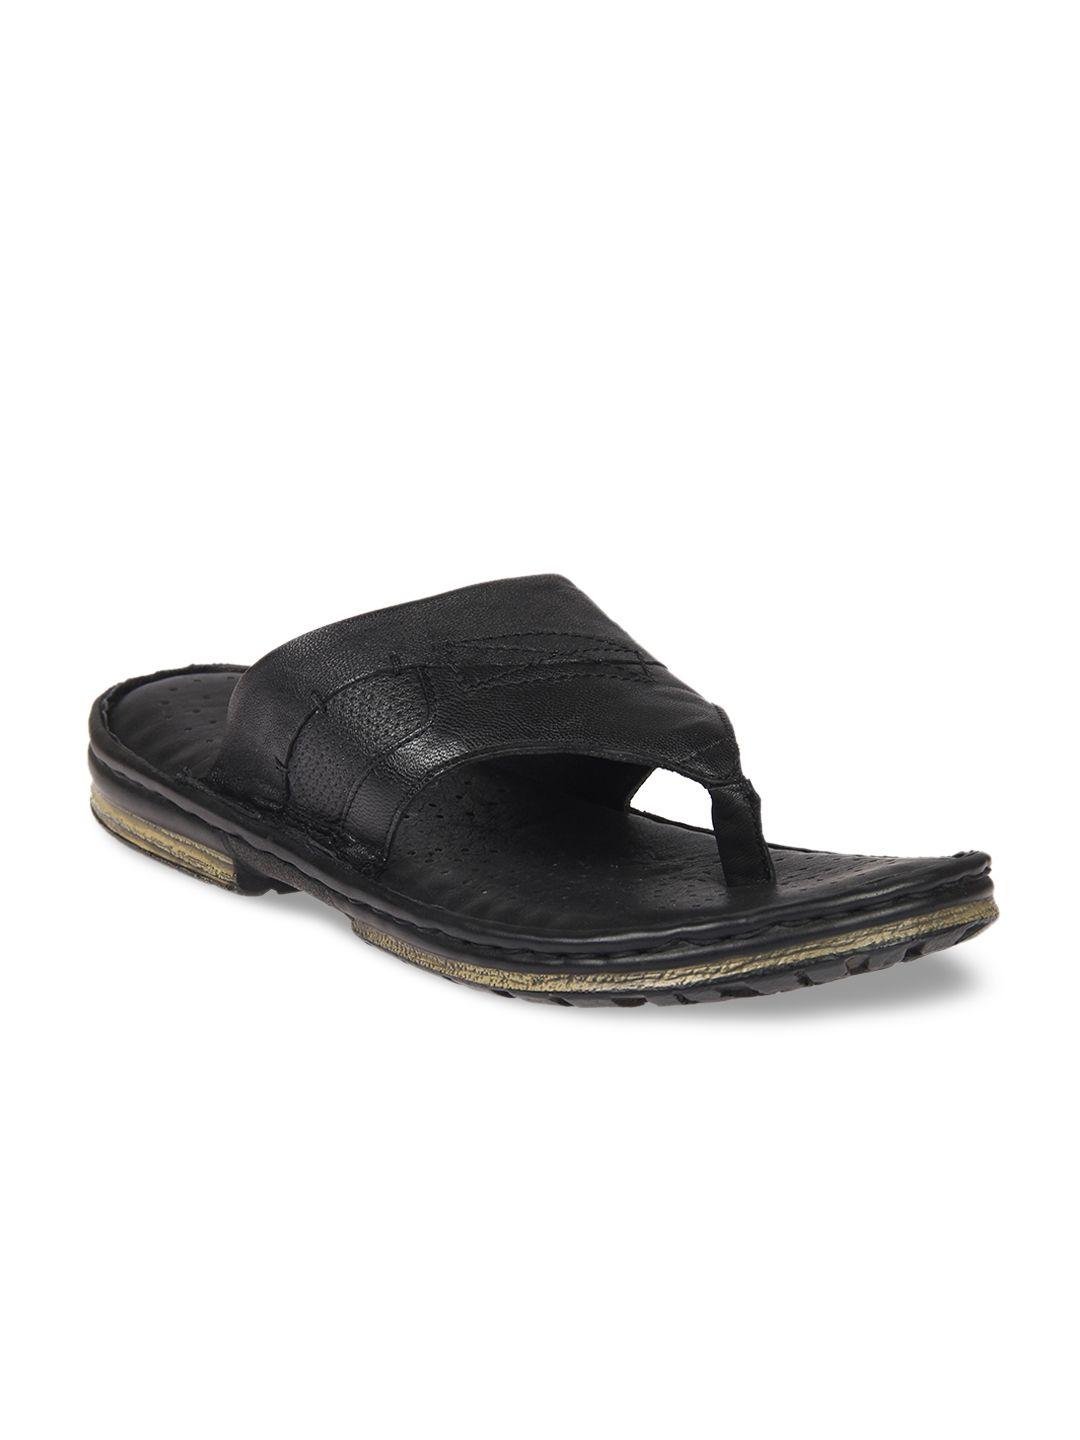 franco-leone-men-black-comfort-leather-sandals